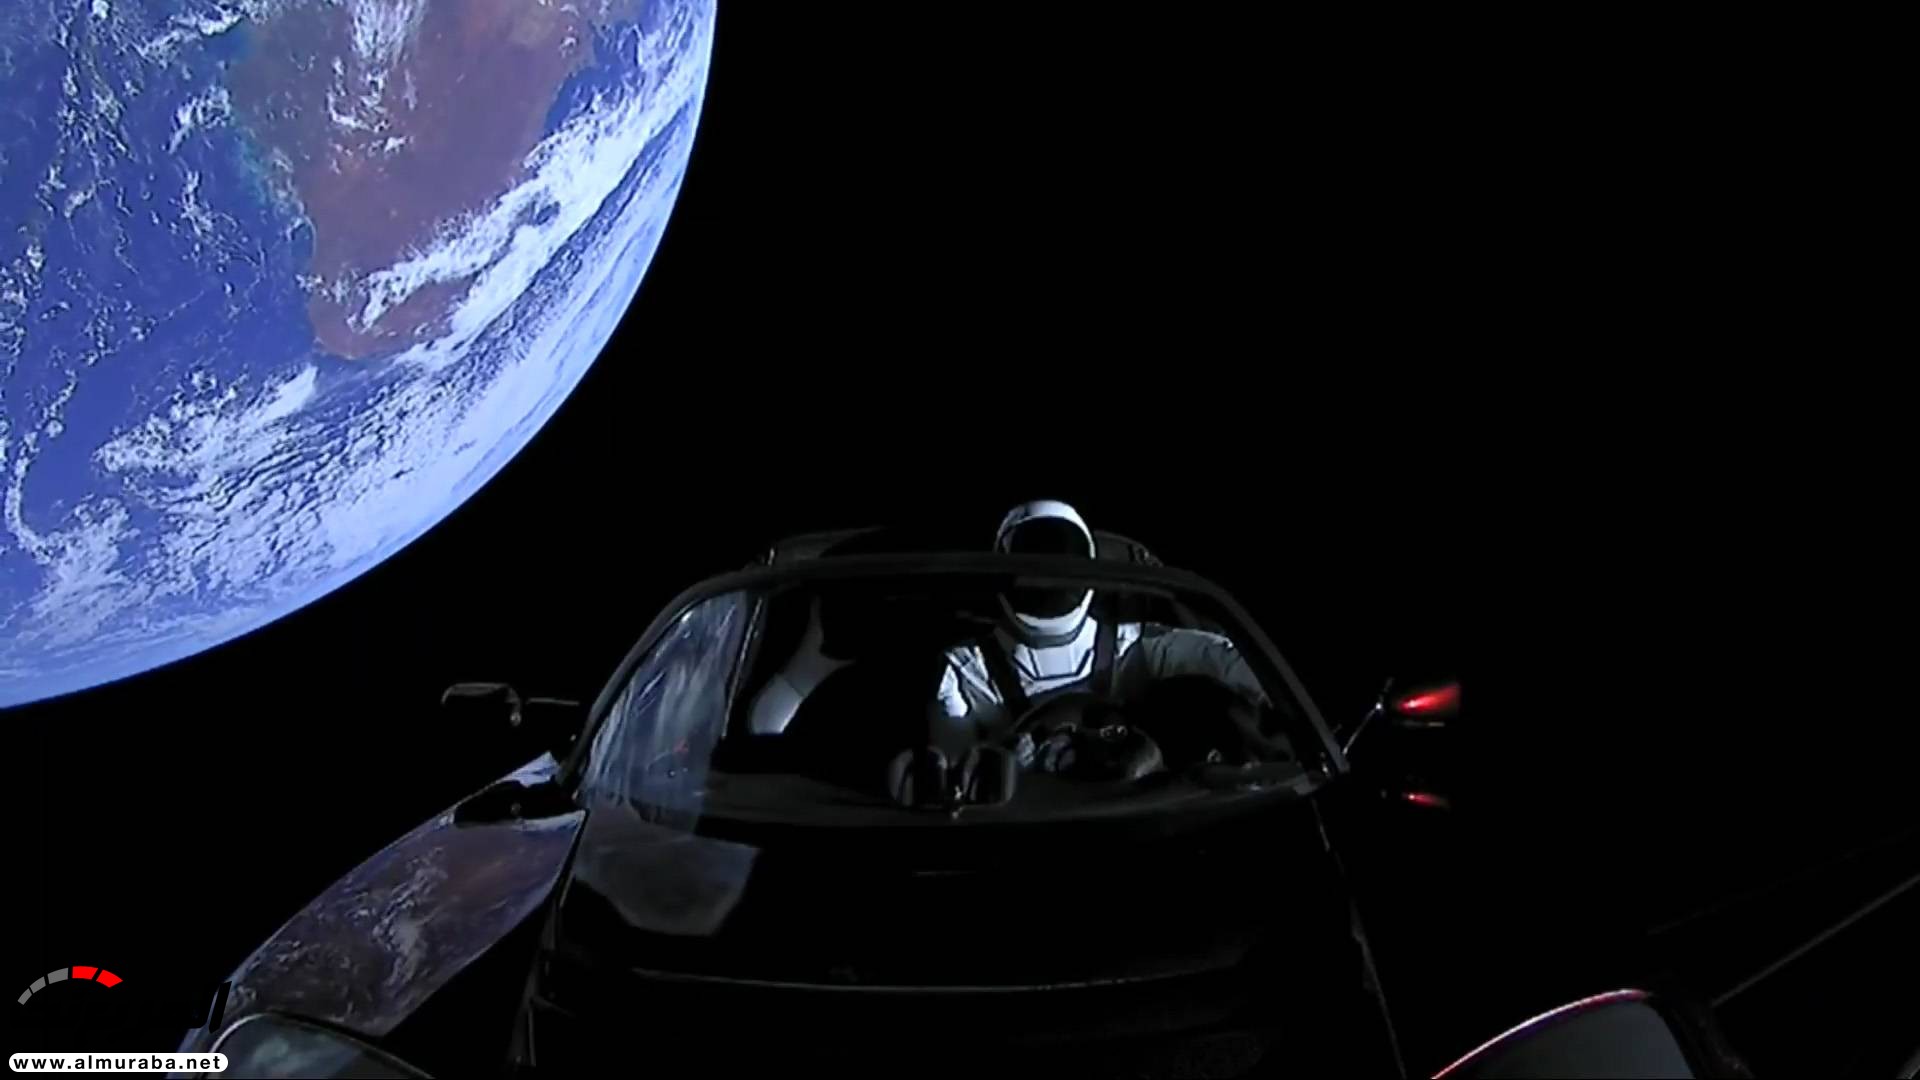 "بالفيديو والصور" إيلون ماسك يطلق تيسلا رودستر إلى المريخ في أقوى صاروخ بالعالم 42